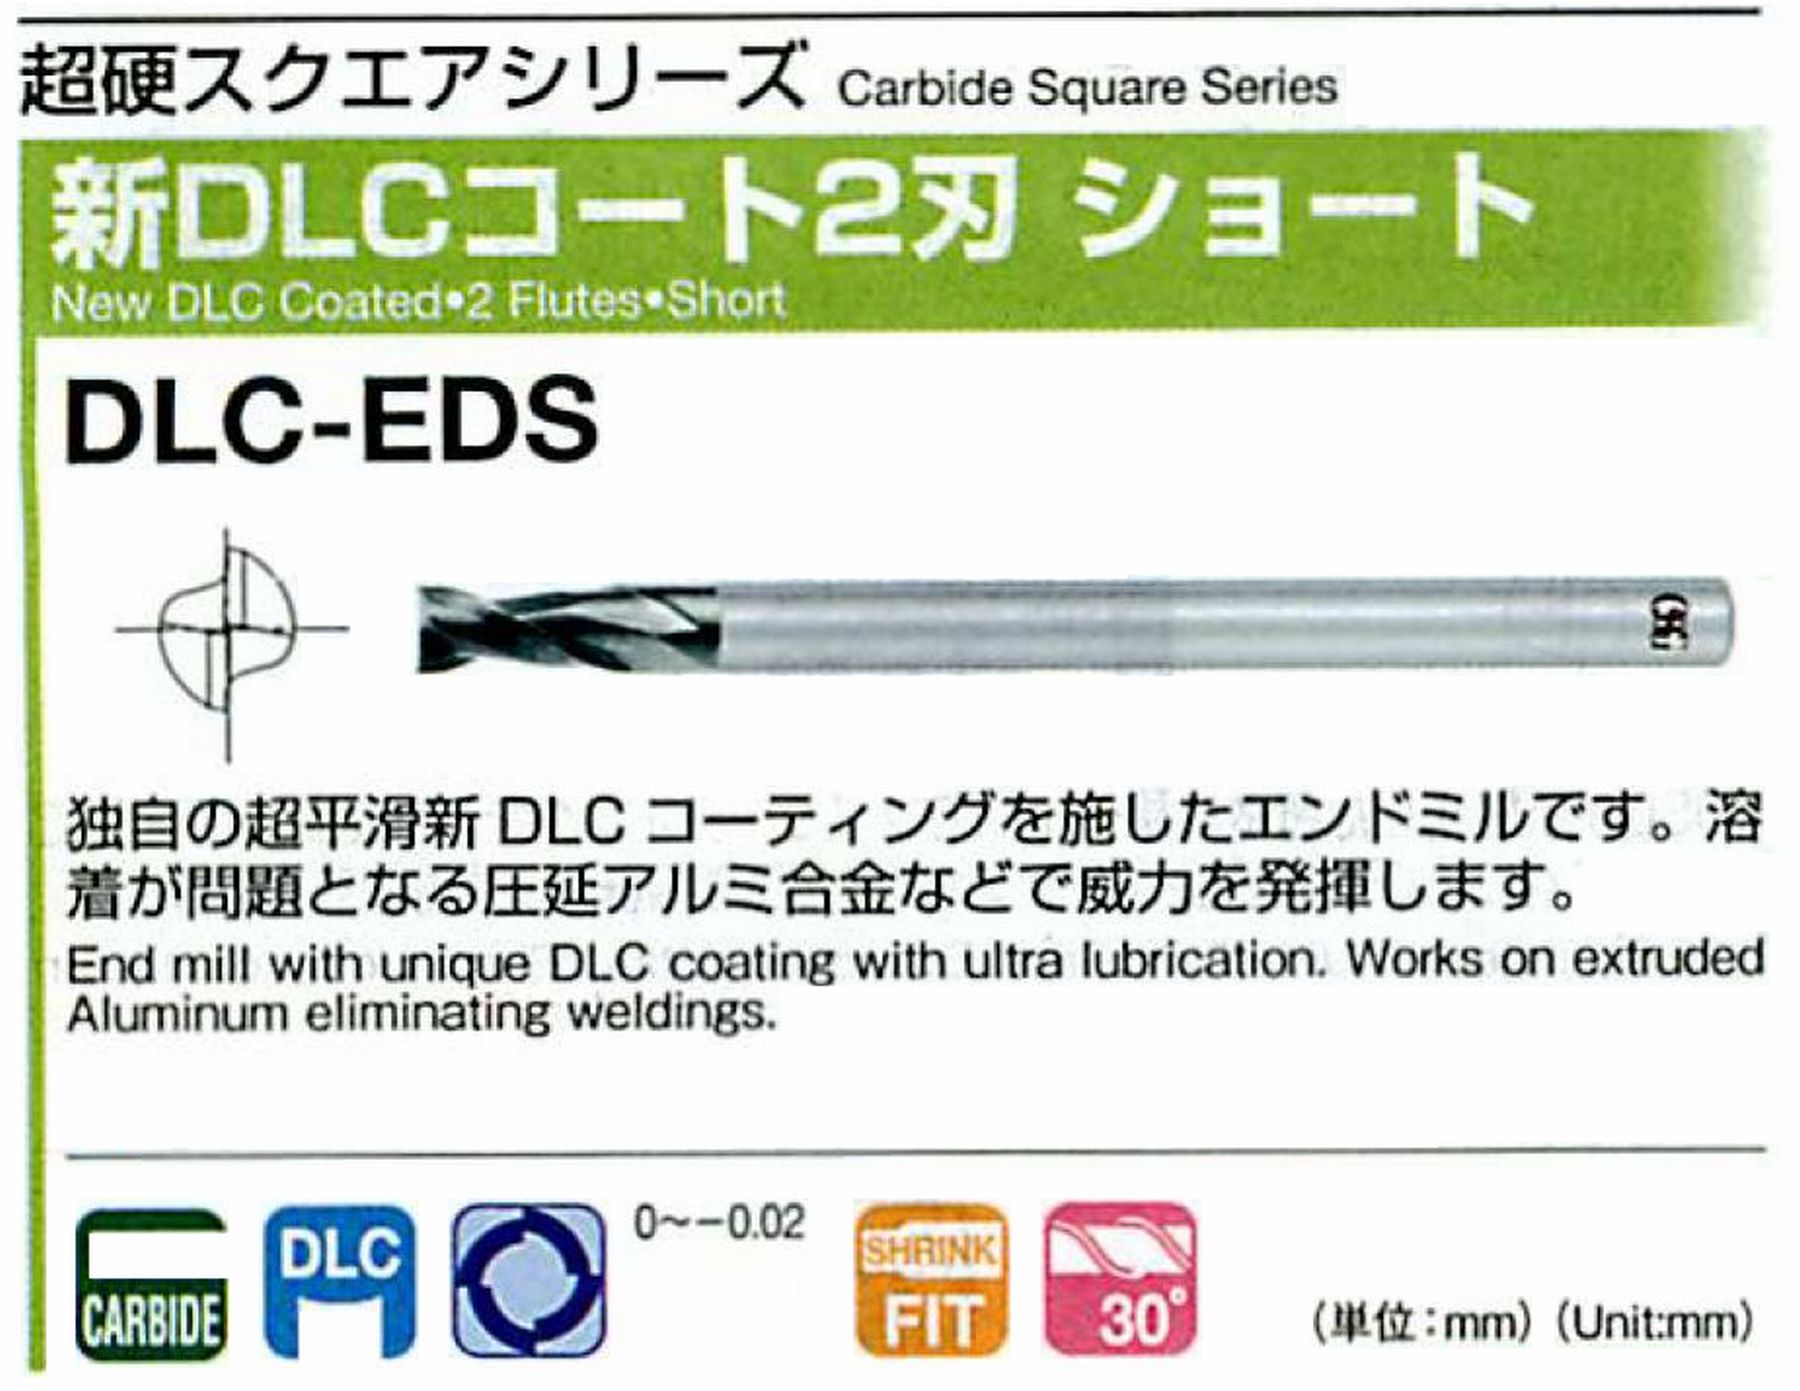 オーエスジー/OSG 新DLCコート 2刃ショート DLC-EDS 外径12 全長75 刃長24 シャンク径12mm